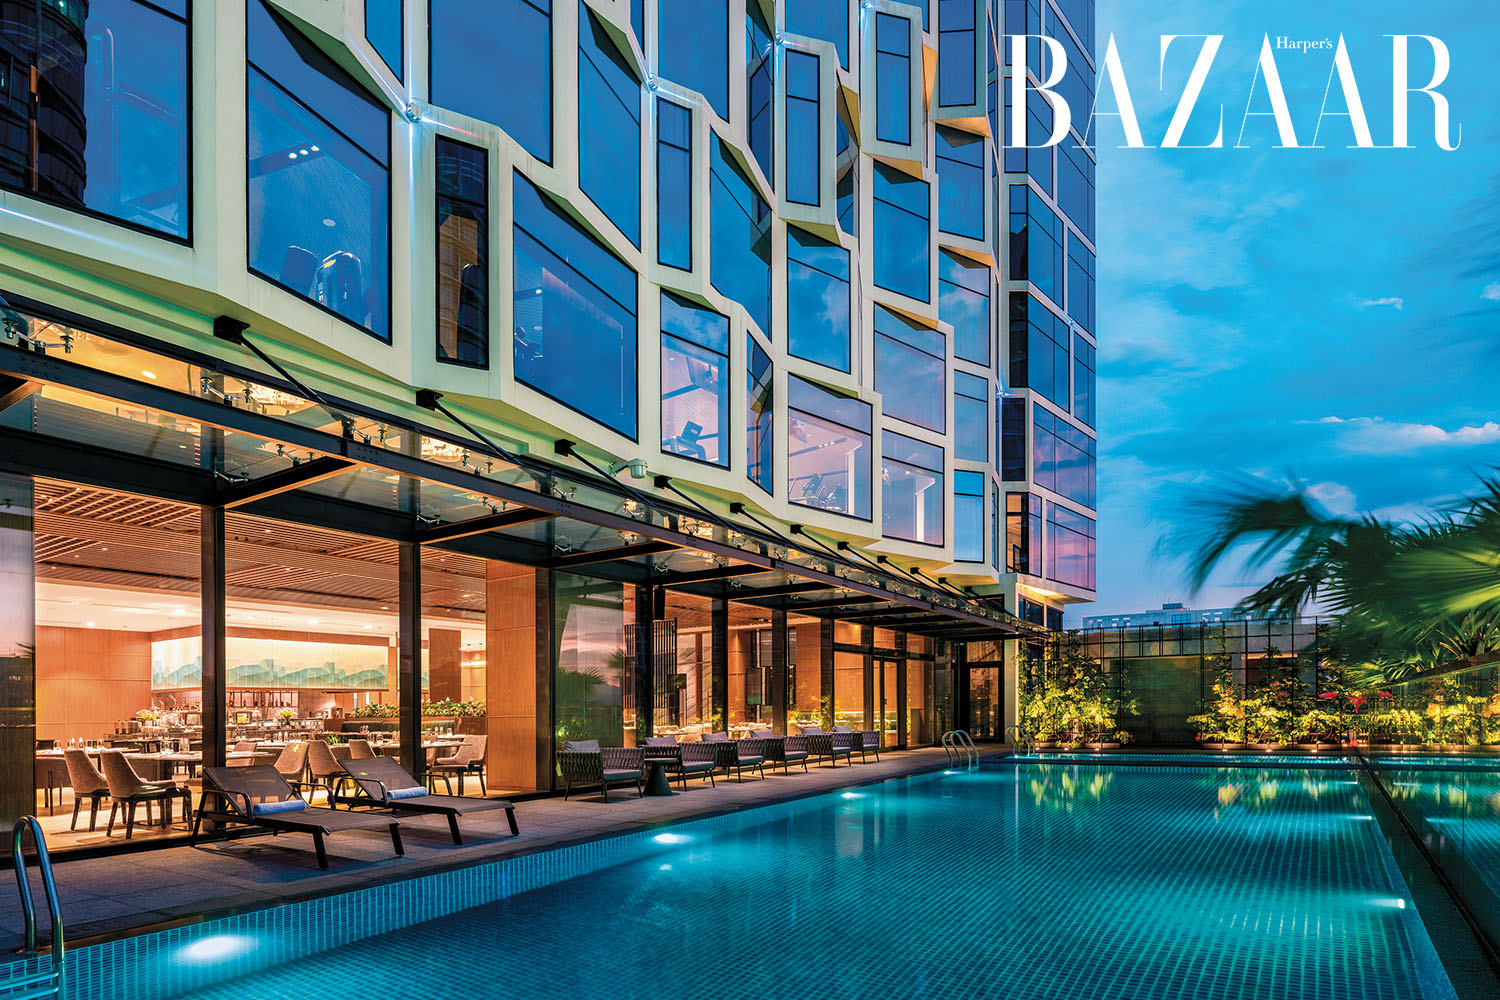 Harper's Bazaar_Khách sạn Bay Capital Da Nang nghỉ dưỡng quiet luxury_03